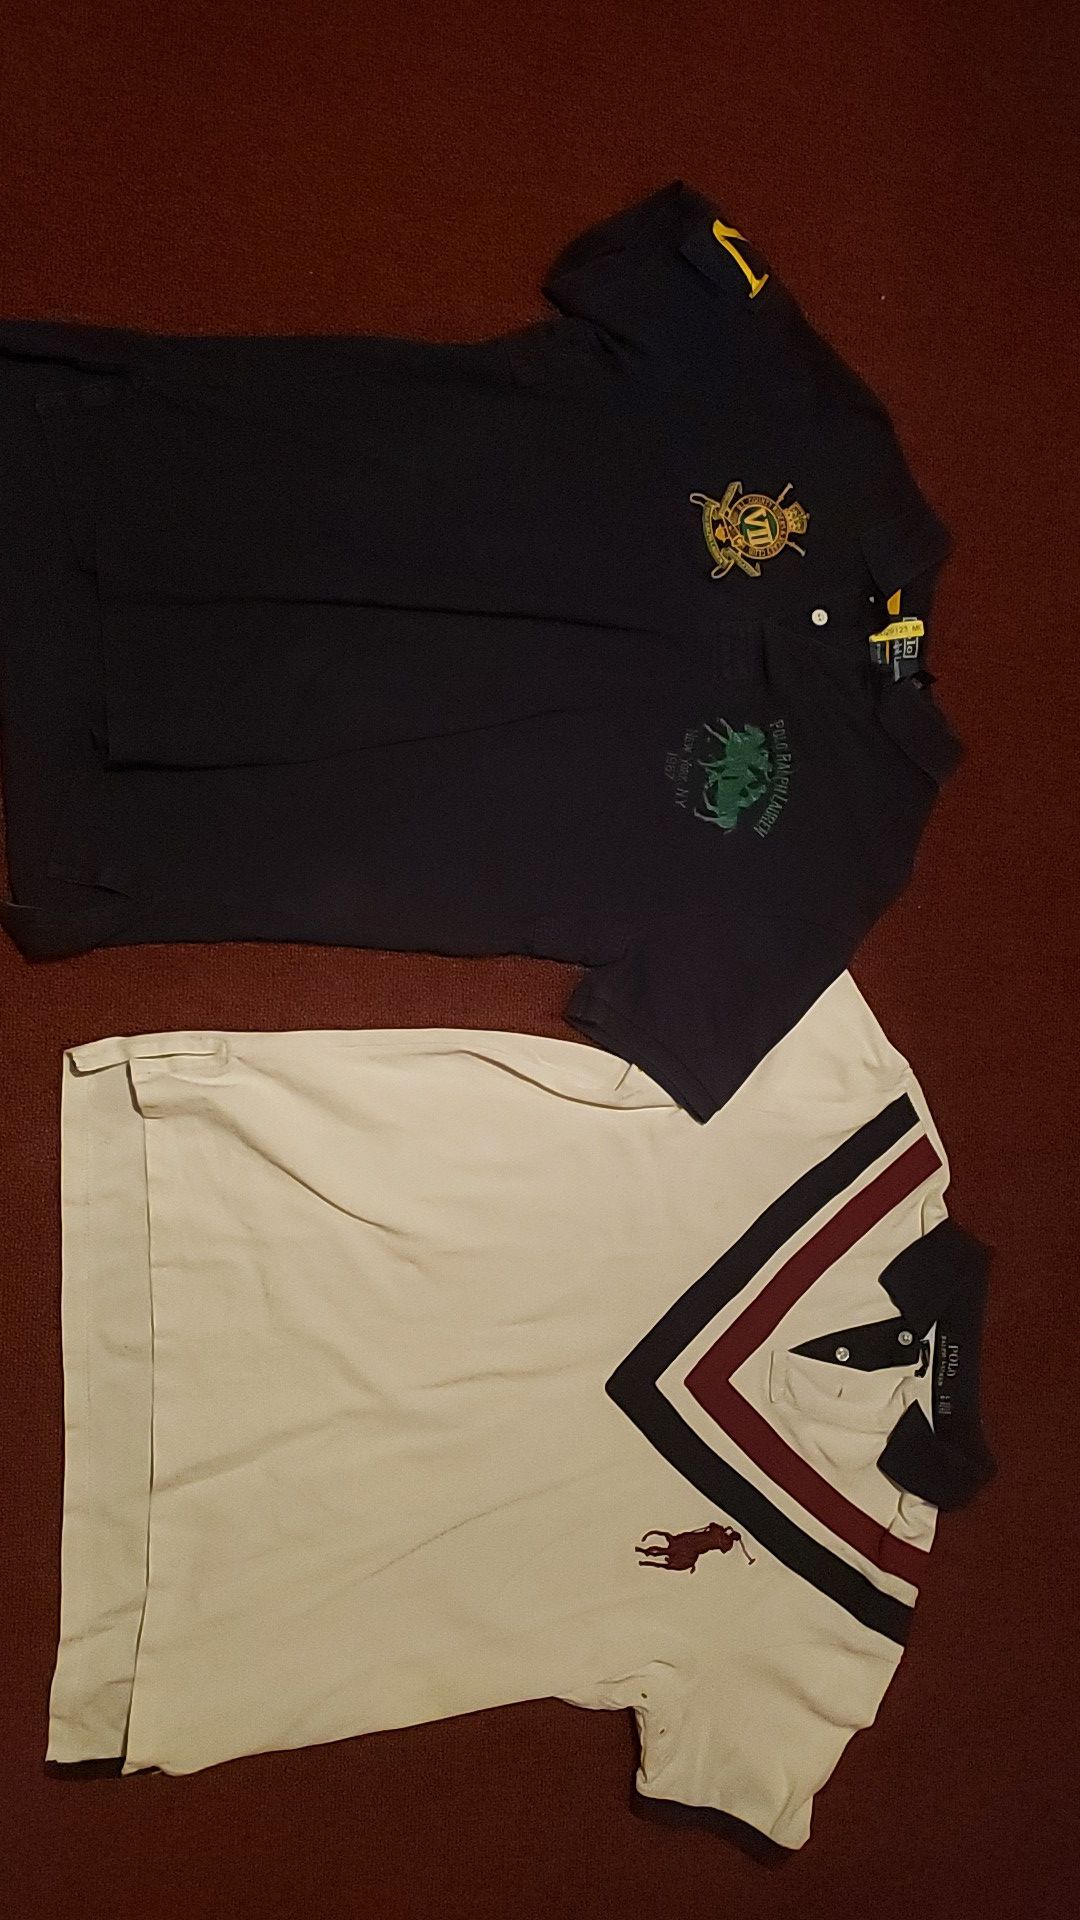 (LEGIT) 2 OG Polo Ralph Lauren Shirts